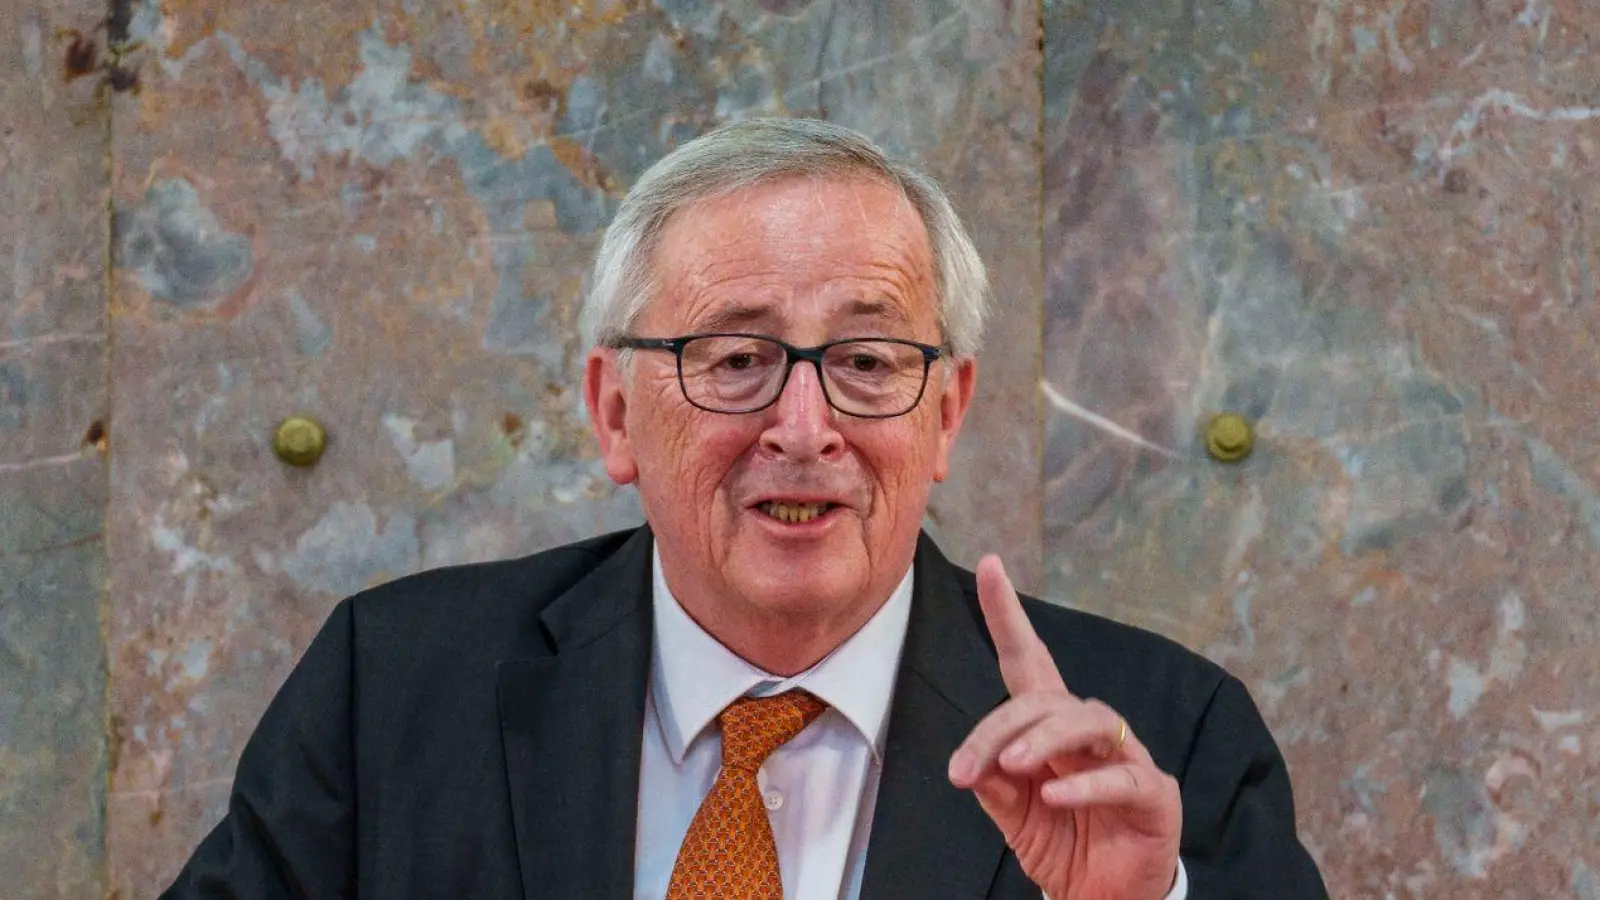 Jean-Claude Juncker warnt die EVP vor einer Zusammenarbeit mit Giorgia Meloni. Dies käme einer Verharmlosung der extremen Rechten gleich, sagt der ehemalige EU-Kommissionspräsident. (Foto: Andreas Arnold/dpa)